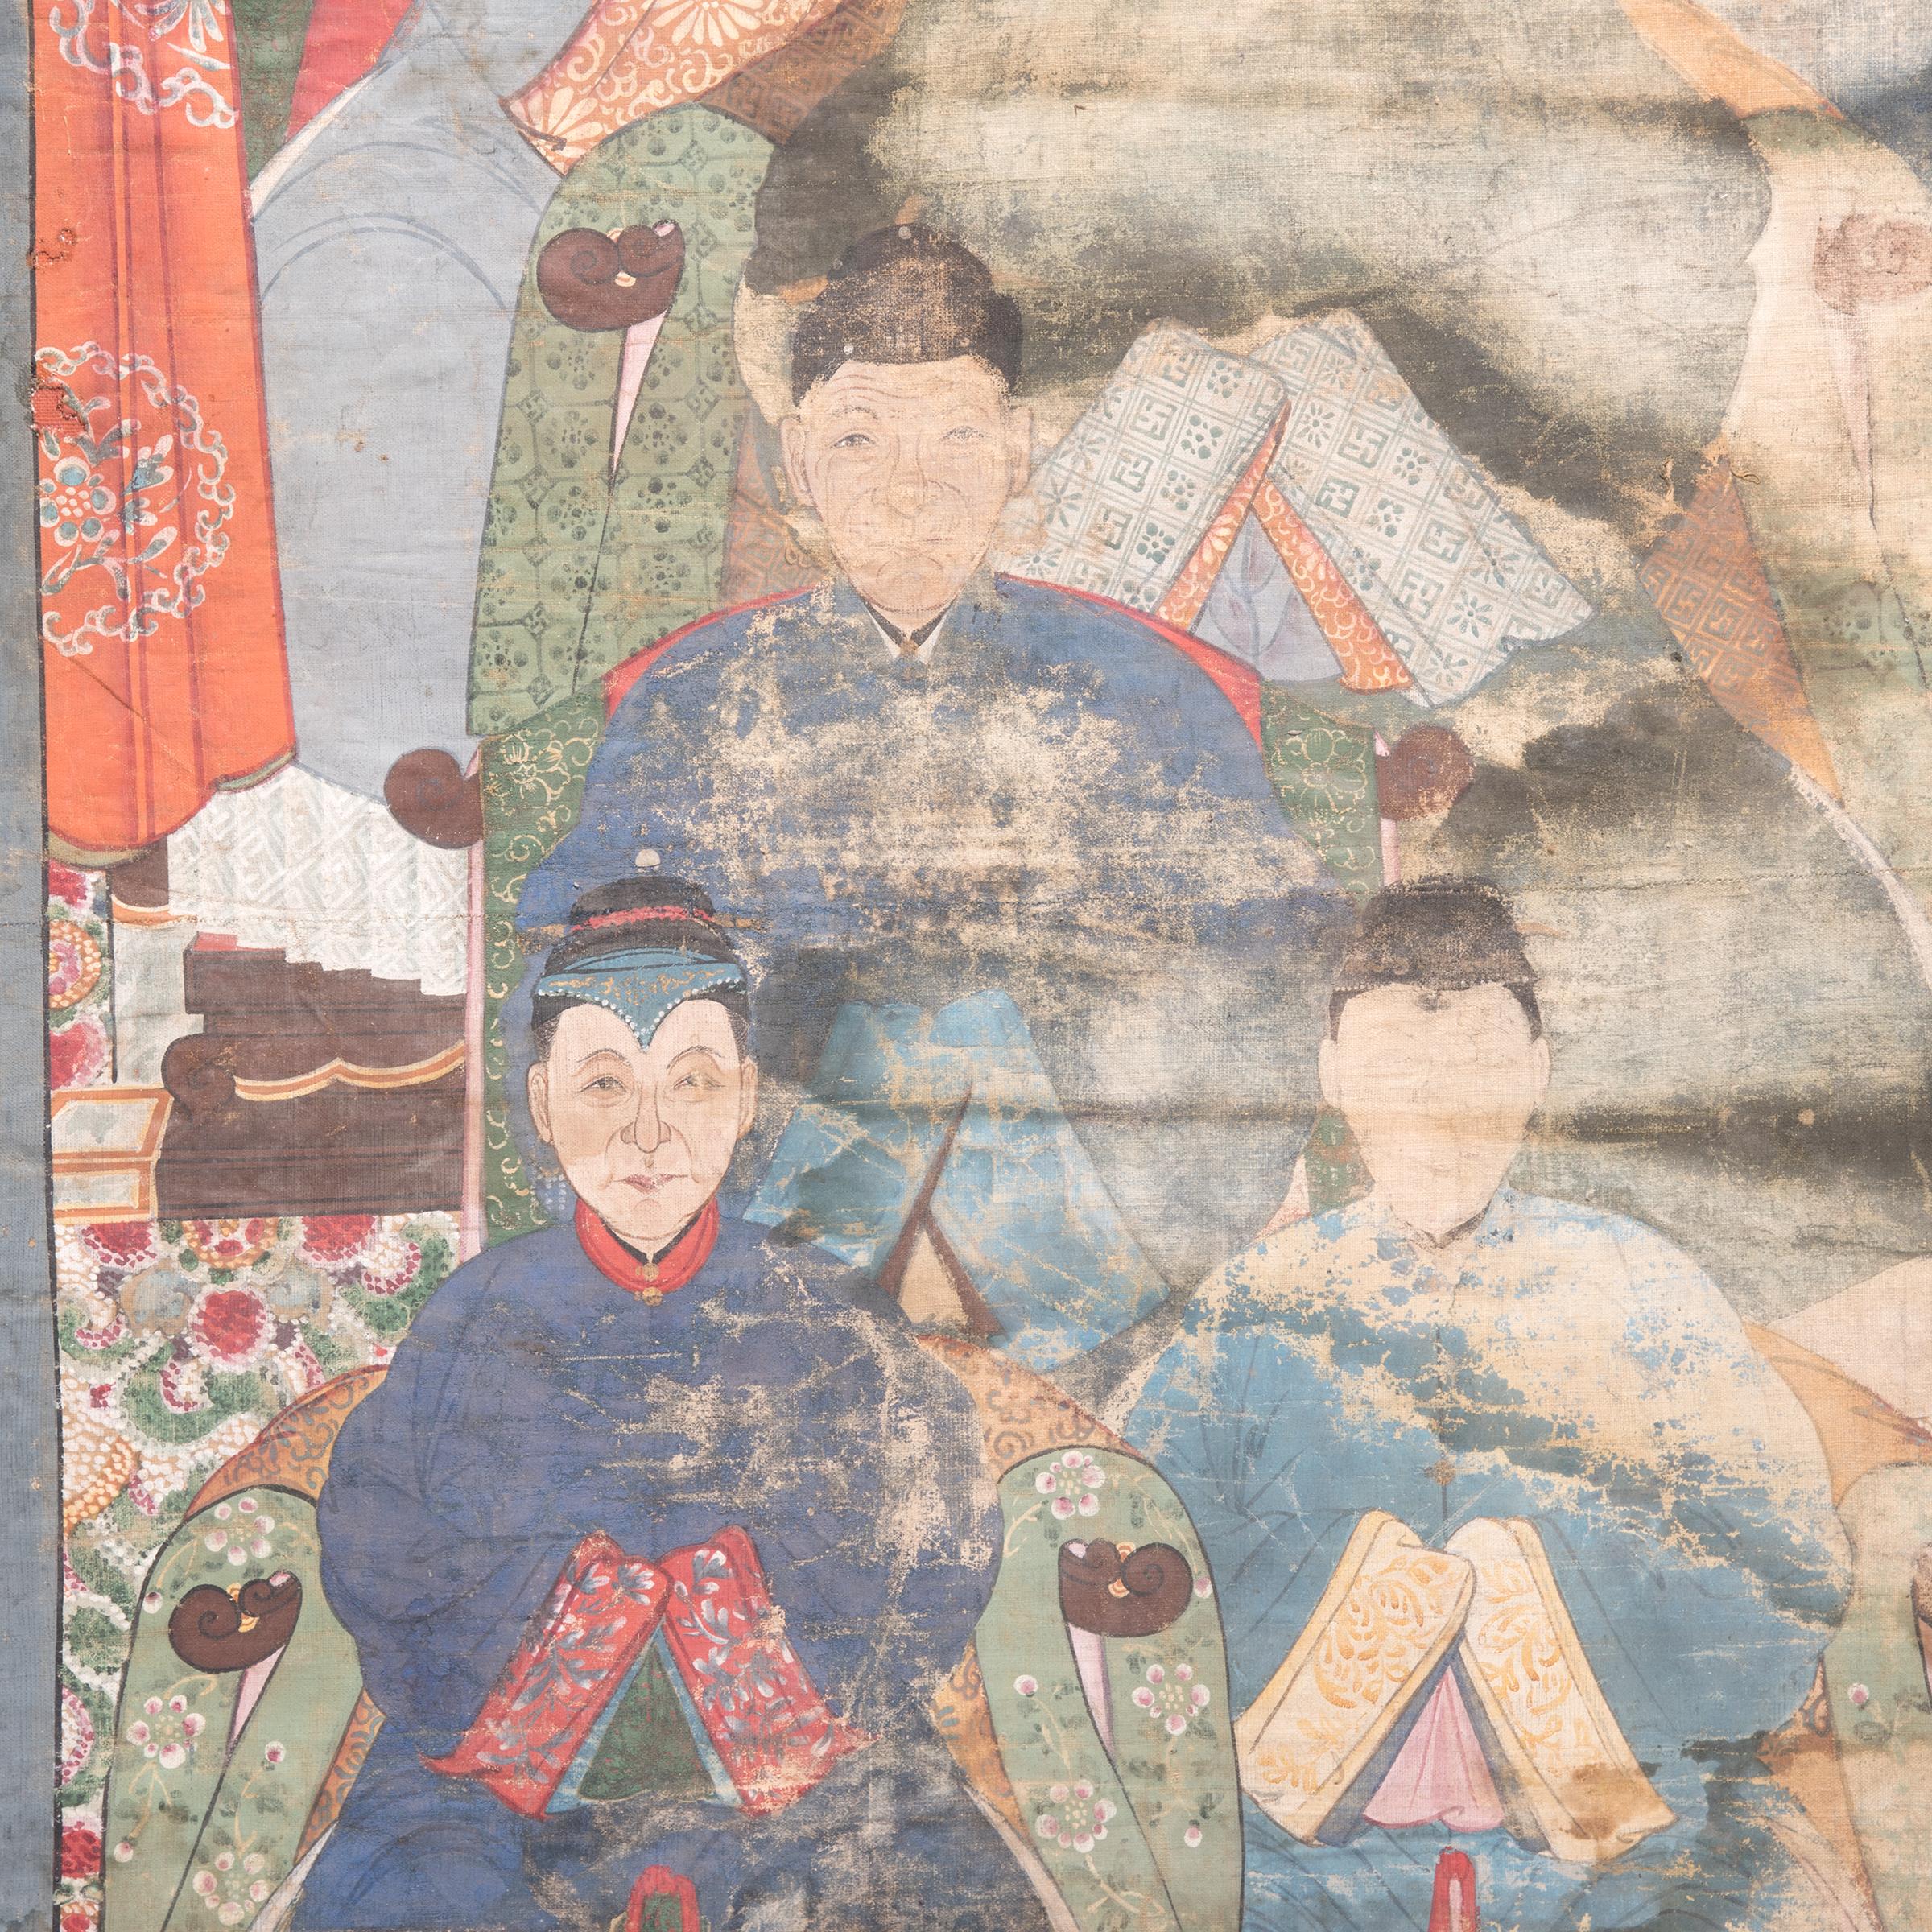 Reflétant le rôle joué par le culte des ancêtres dans la culture chinoise, cette peinture de la dynastie Qing représente plusieurs générations de la famille, vêtues de vêtements aux détails complexes et aux couleurs éclatantes. Les ancêtres les plus